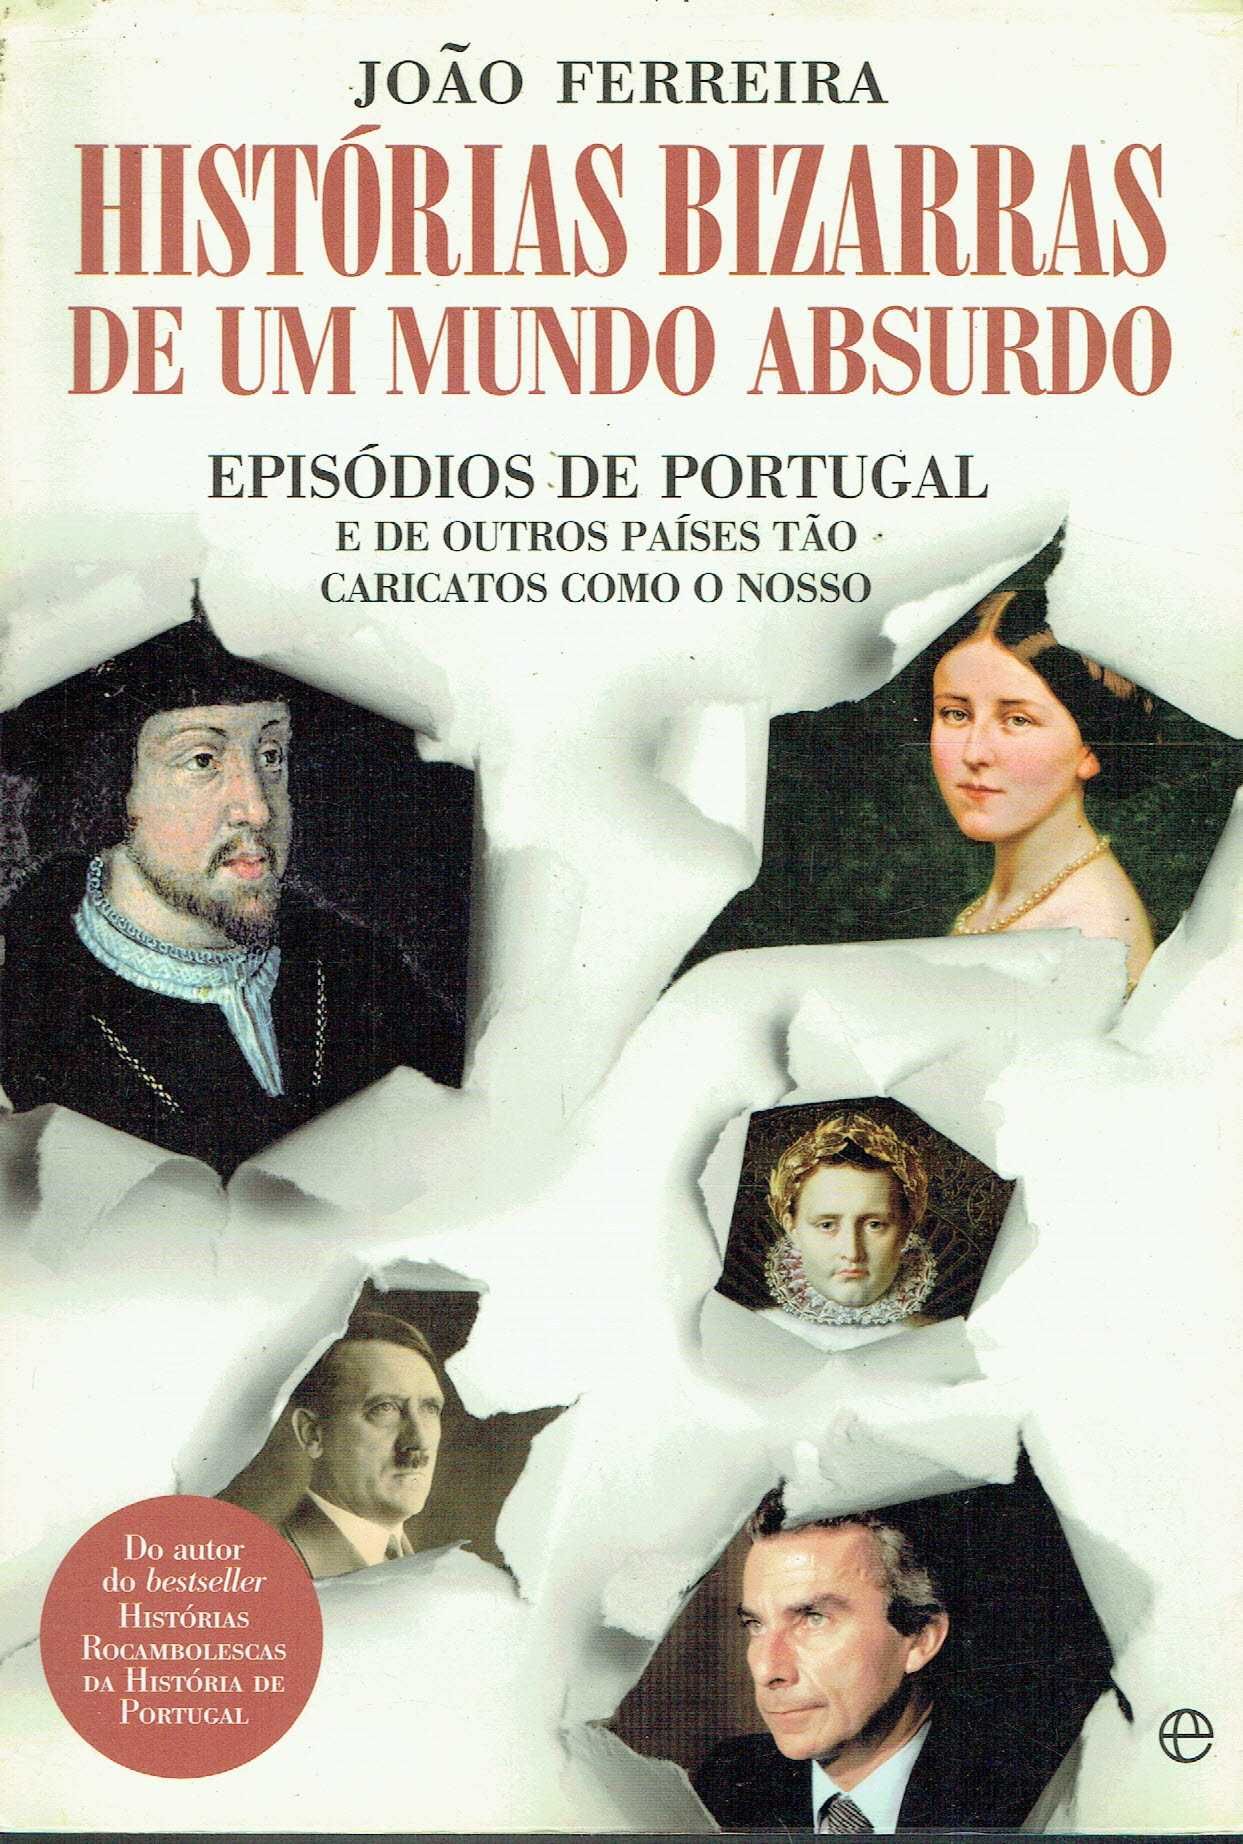 15321

Histórias Bizarras de um Mundo Absurdo
de João Ferreira